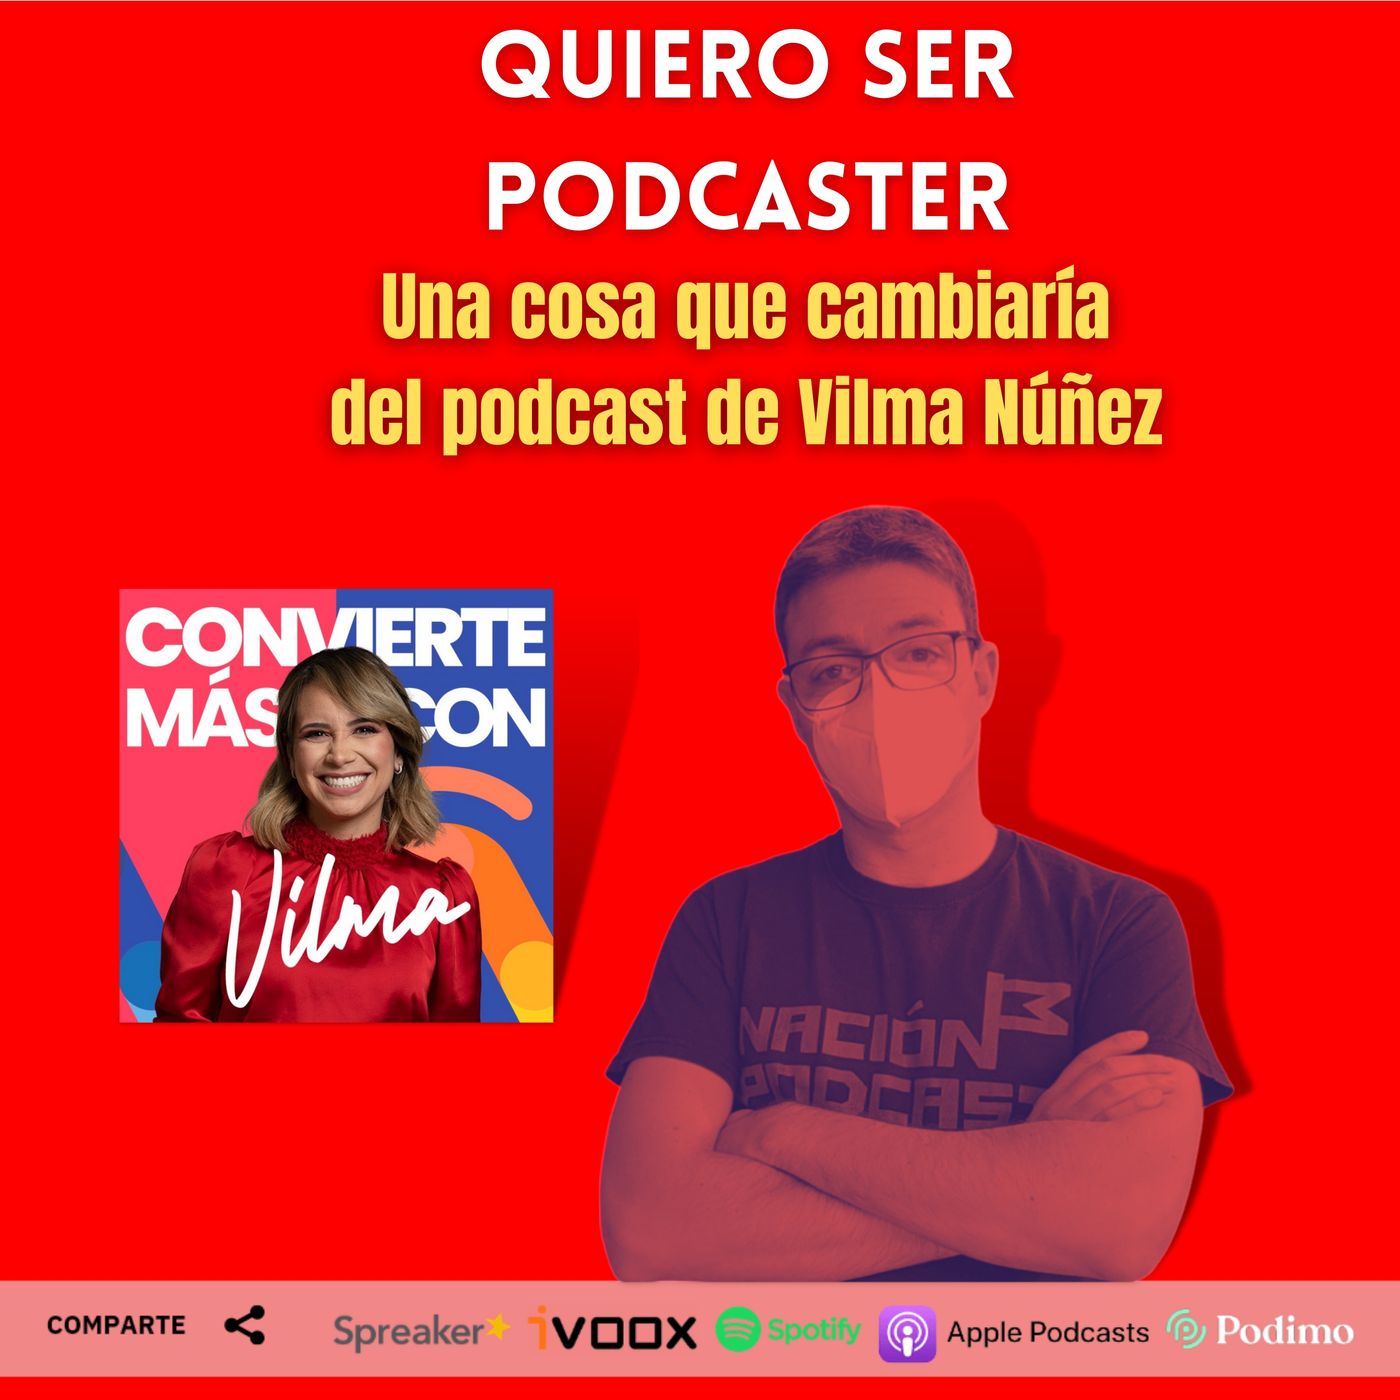 Una cosa que cambiaría del podcast de Vilma Núñez @Vilmanunez